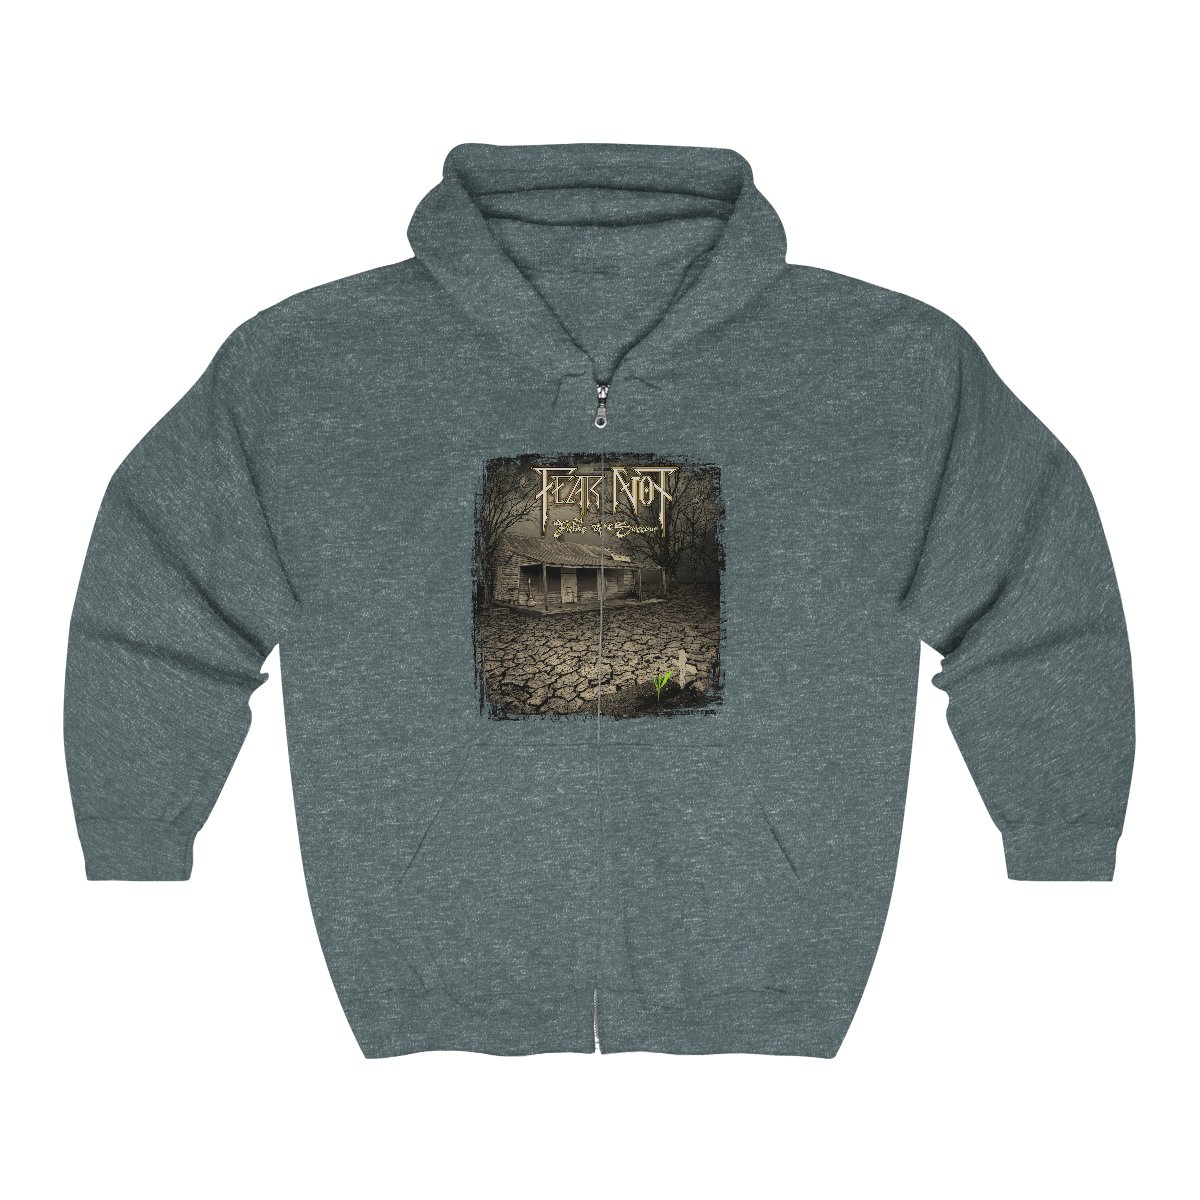 Fear Not – Fields of Sorrow Full Zip Hooded Sweatshirt 18600